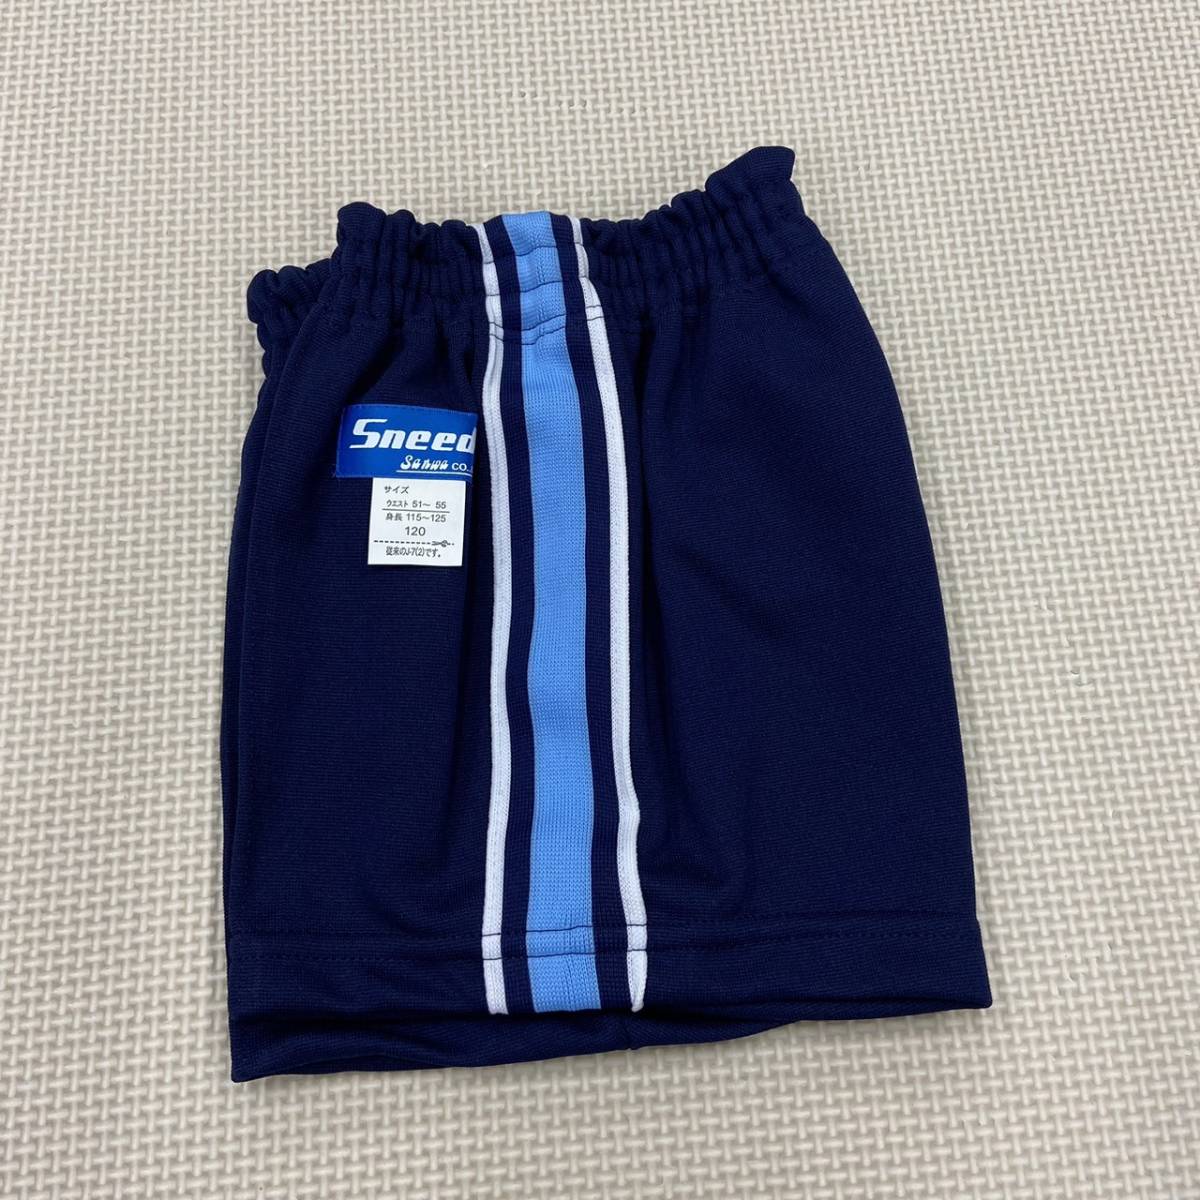 SS-NBSP1205 новый товар [Sneed Sanwa] спорт одежда шорты размер 120 5 листов / темно-синий x бледно-голубой / короткий хлеб / мягкая игрушка / дисплей / маленький размер 